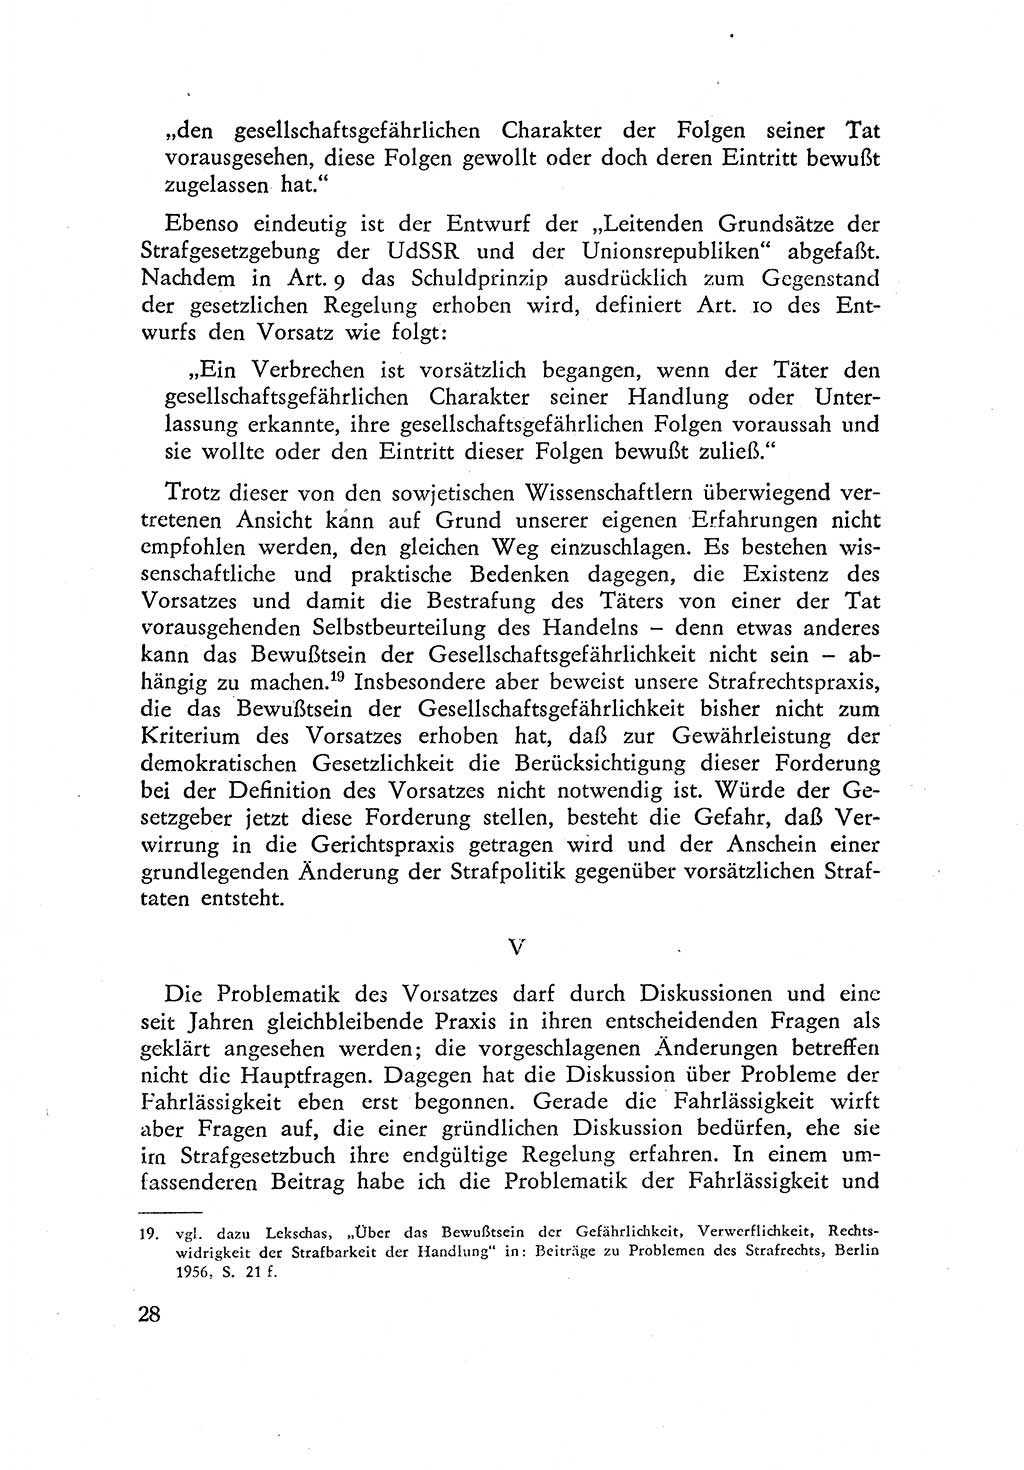 Beiträge zum Strafrecht [Deutsche Demokratische Republik (DDR)] 1959, Seite 28 (Beitr. Strafr. DDR 1959, S. 28)